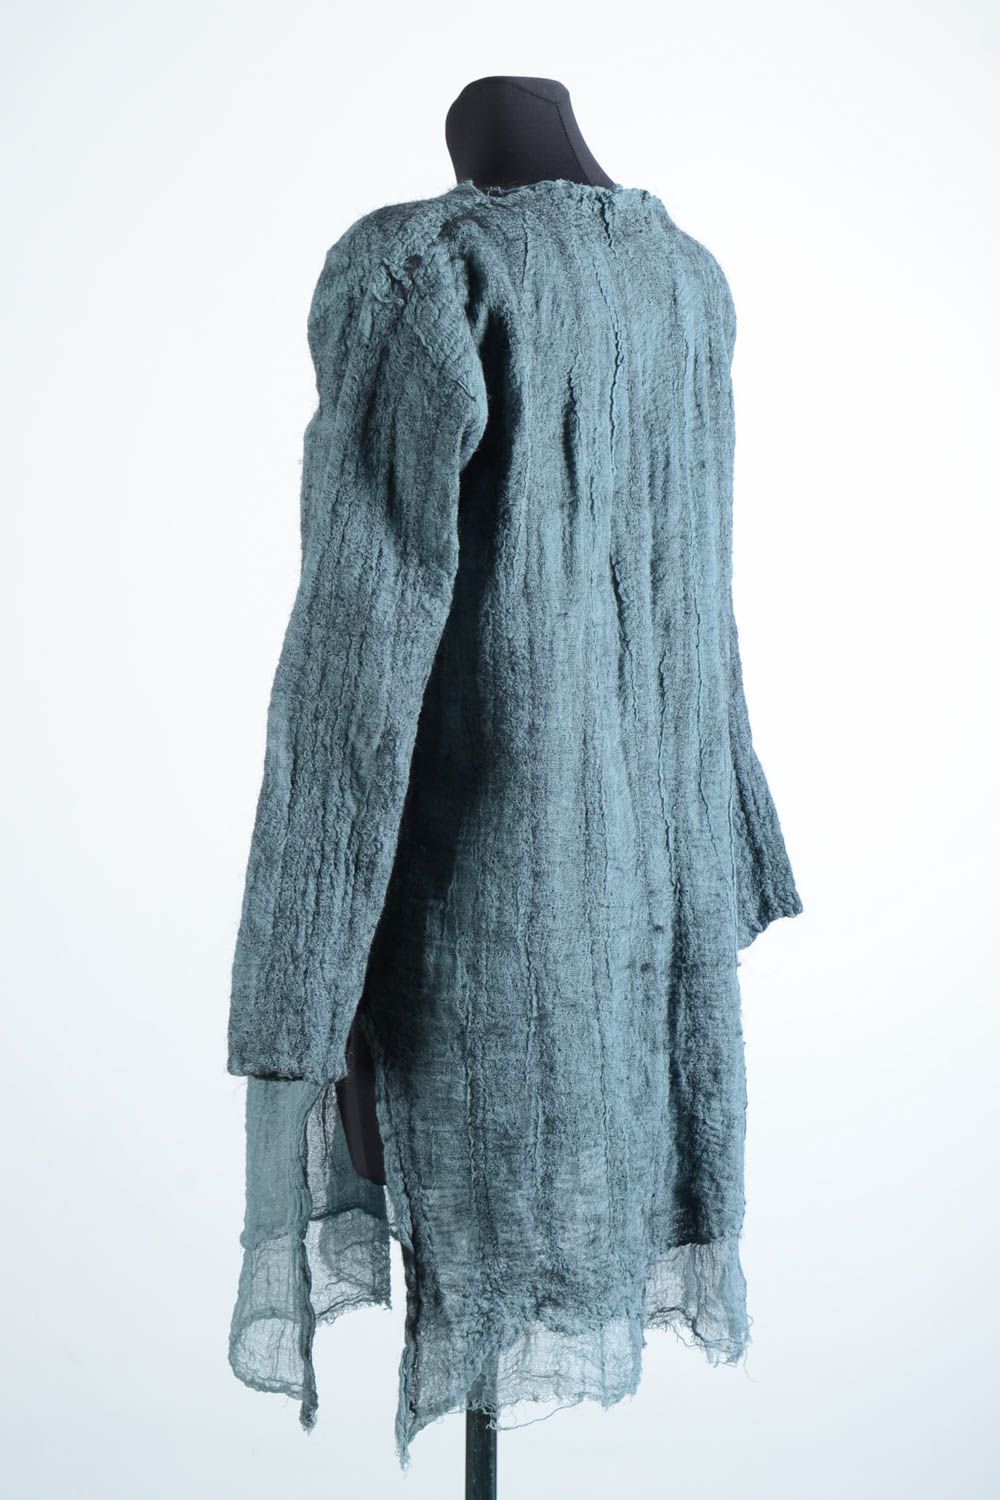 Robe femme fait main Robe laine gris bleu feutrage Vêtement femme de mode photo 4